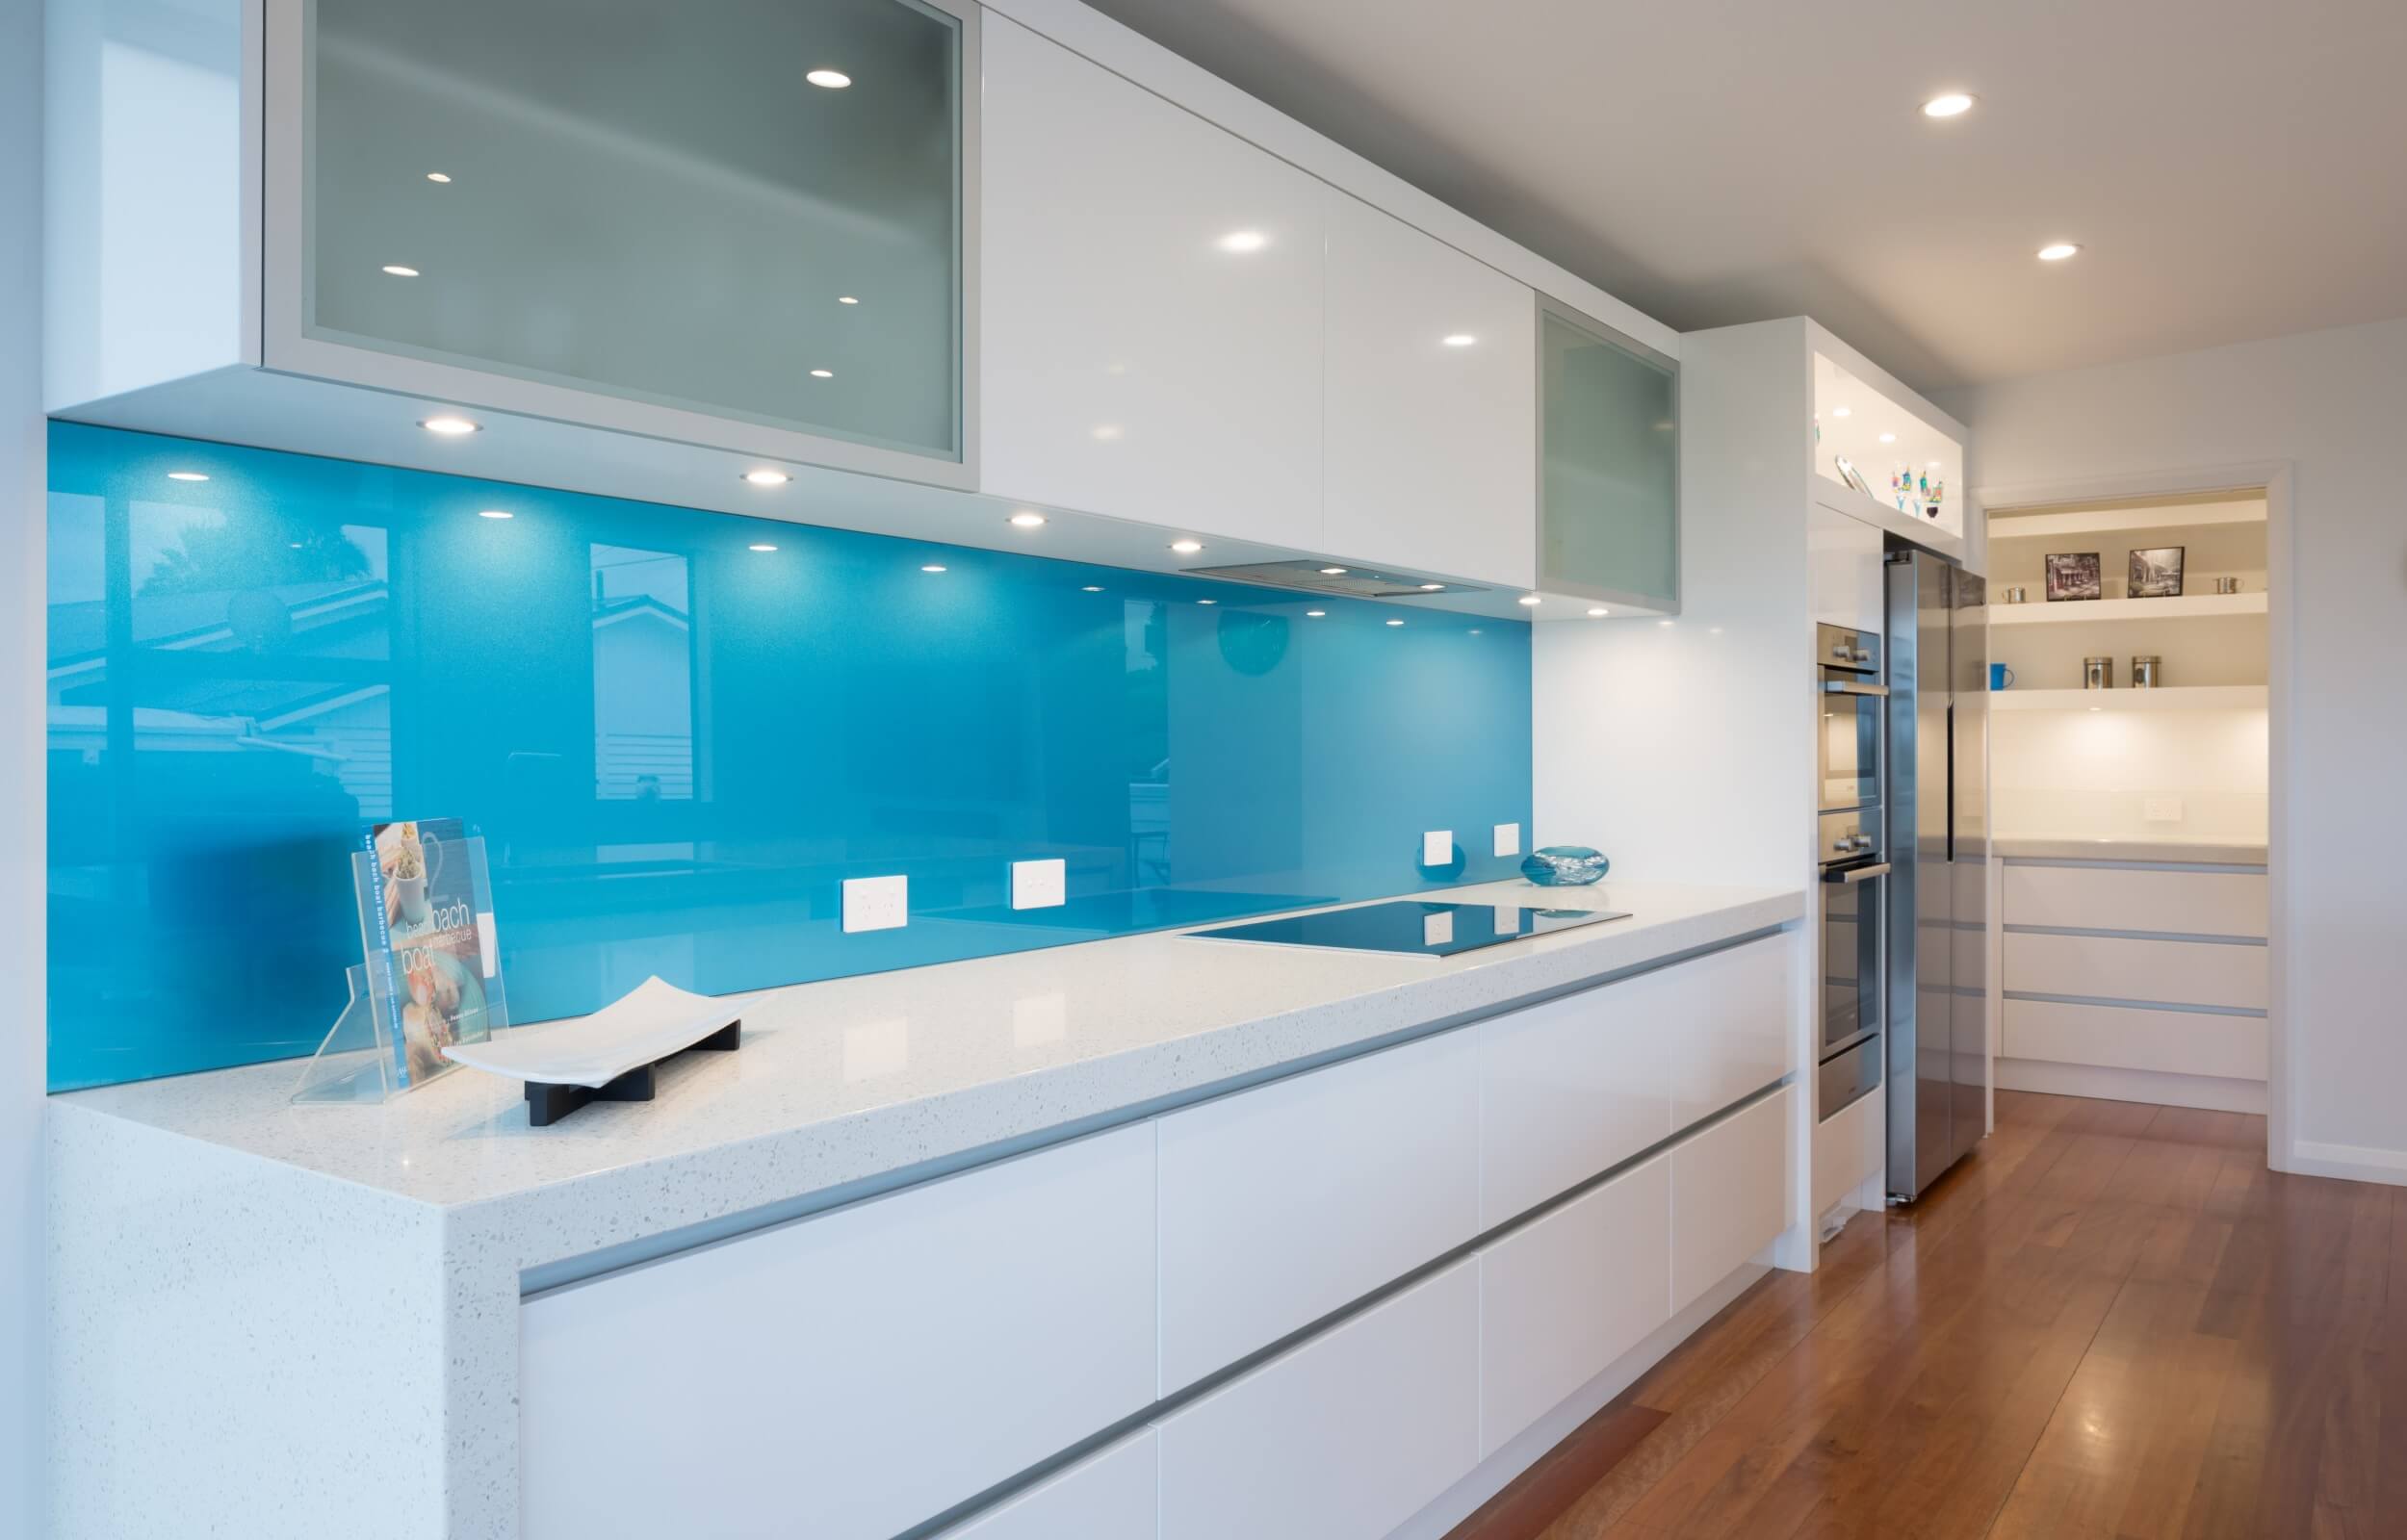 Metallic blue splashback in modern white kitchen with sucllery